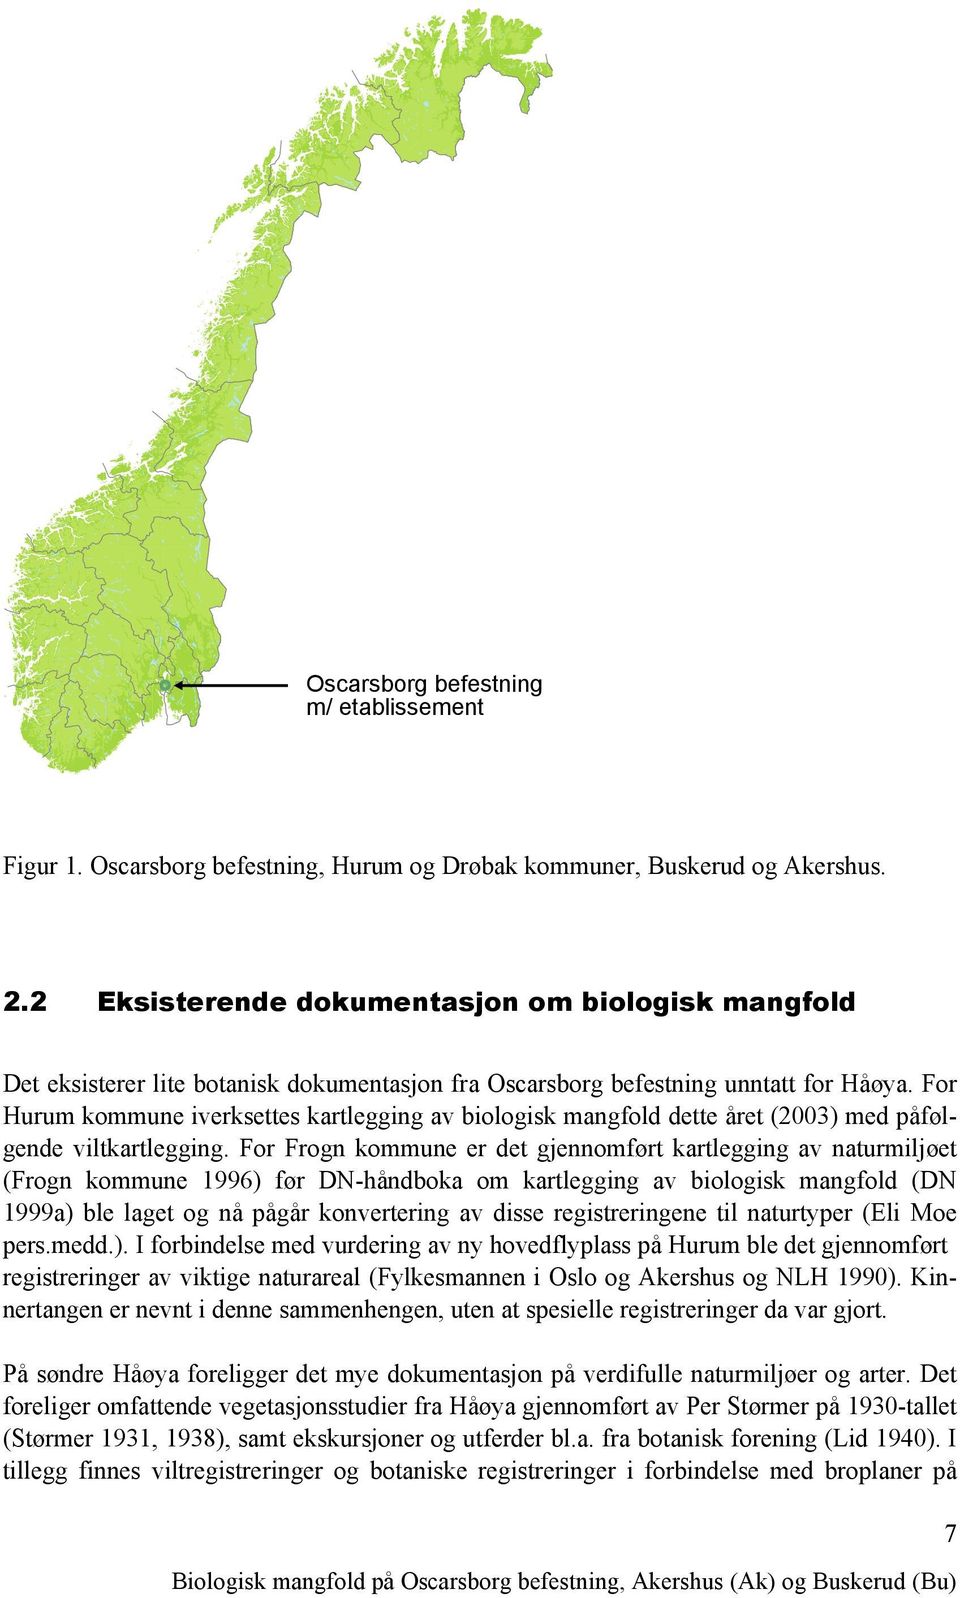 For Hurum kommune iverksettes kartlegging av biologisk mangfold dette året (2003) med påfølgende viltkartlegging.